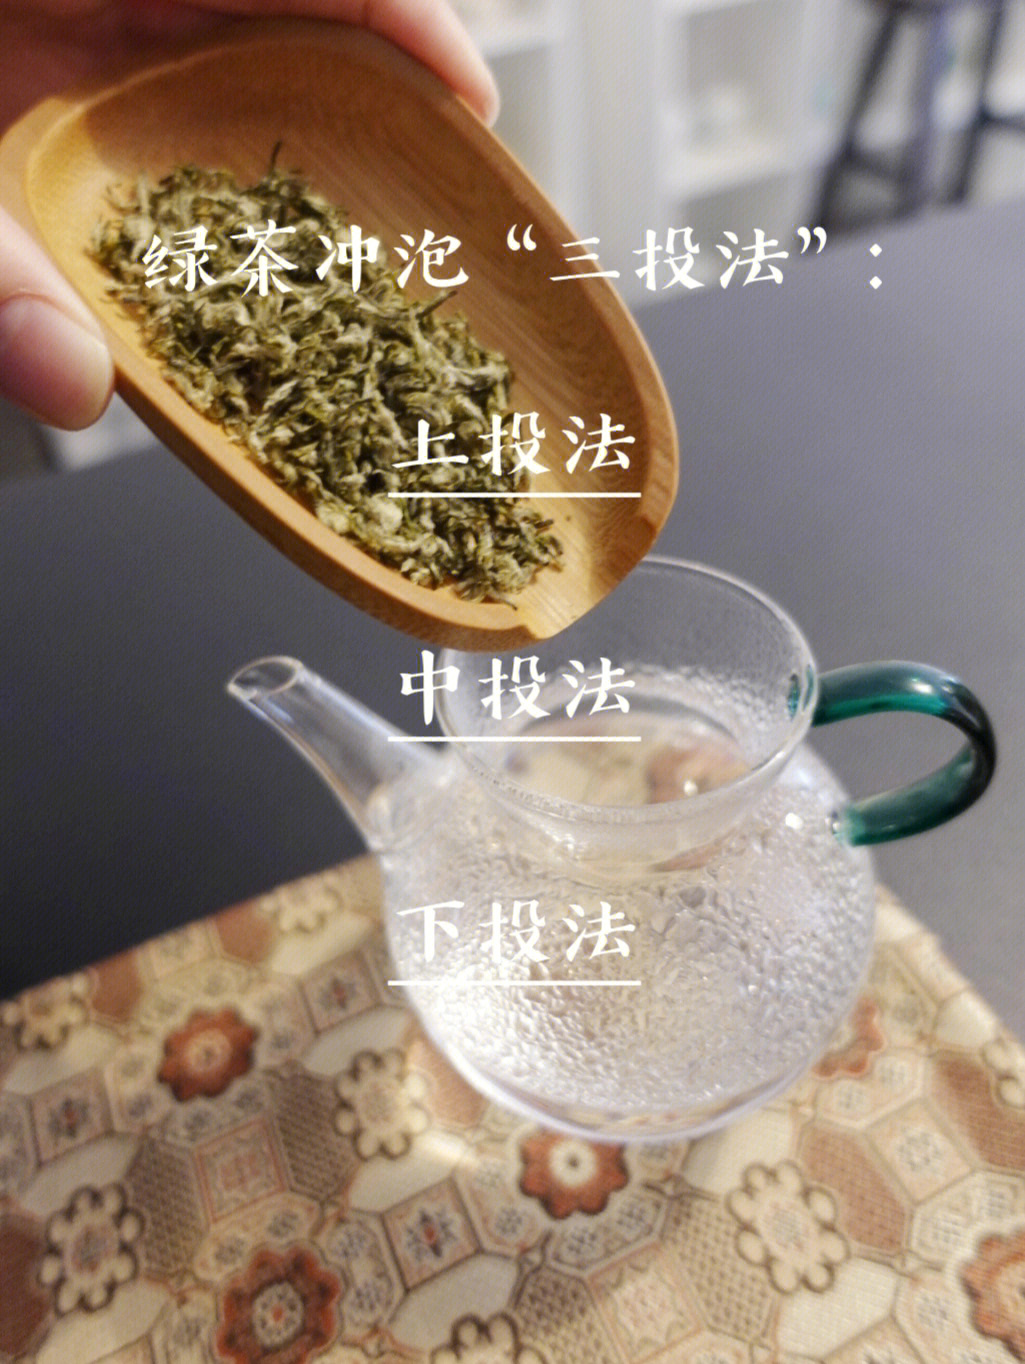 习茶笔记三种玻璃杯冲泡绿茶的方法